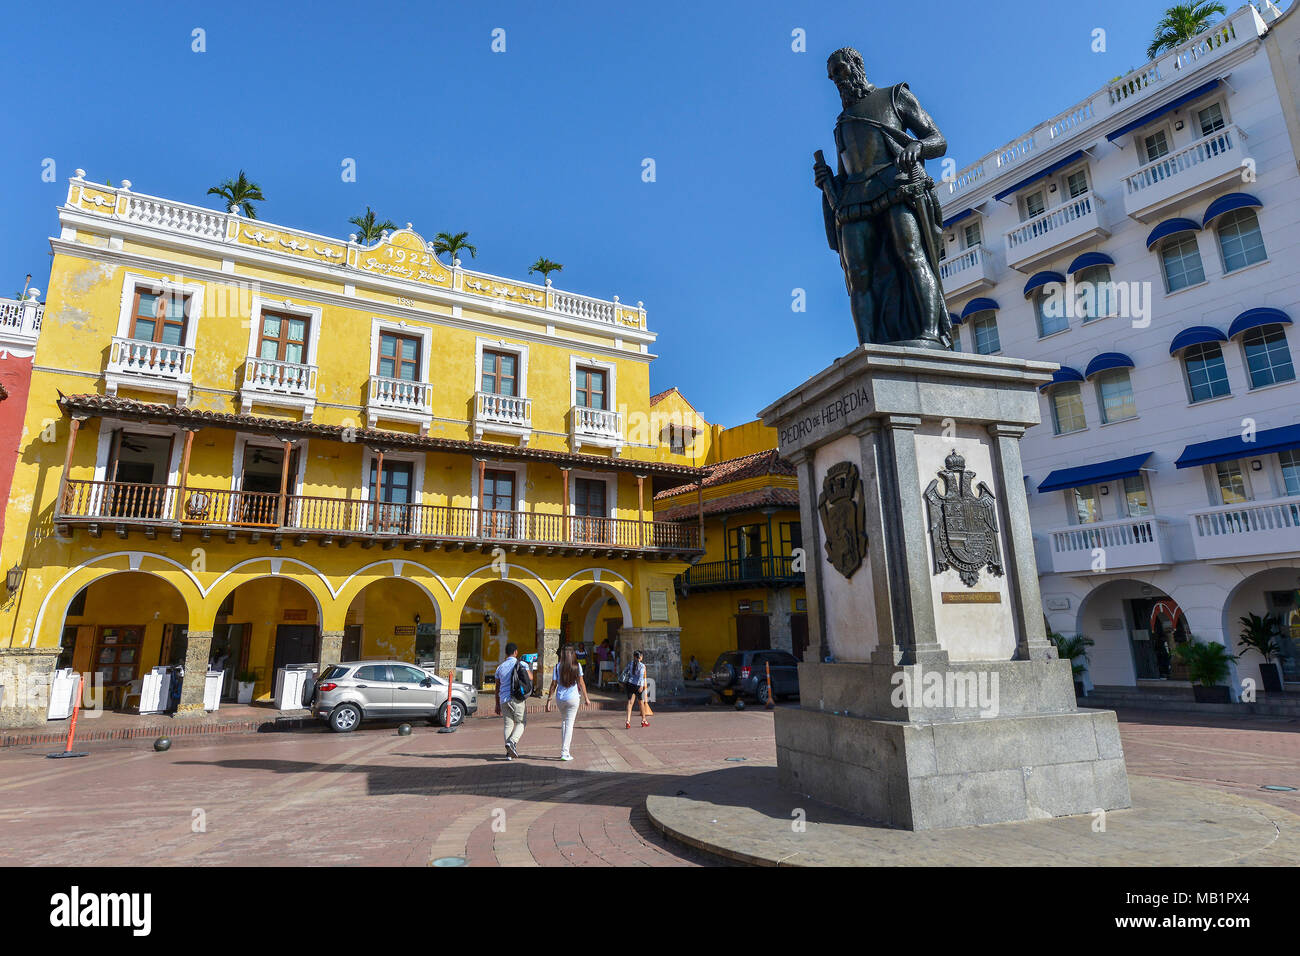 Cartagena, Kolumbien - August 3, 2017: Nicht identifizierte Personen zu Fuß durch die Plaza de los Coches, neben der Statue von Pedro Heredia in Cartagena. Stockfoto